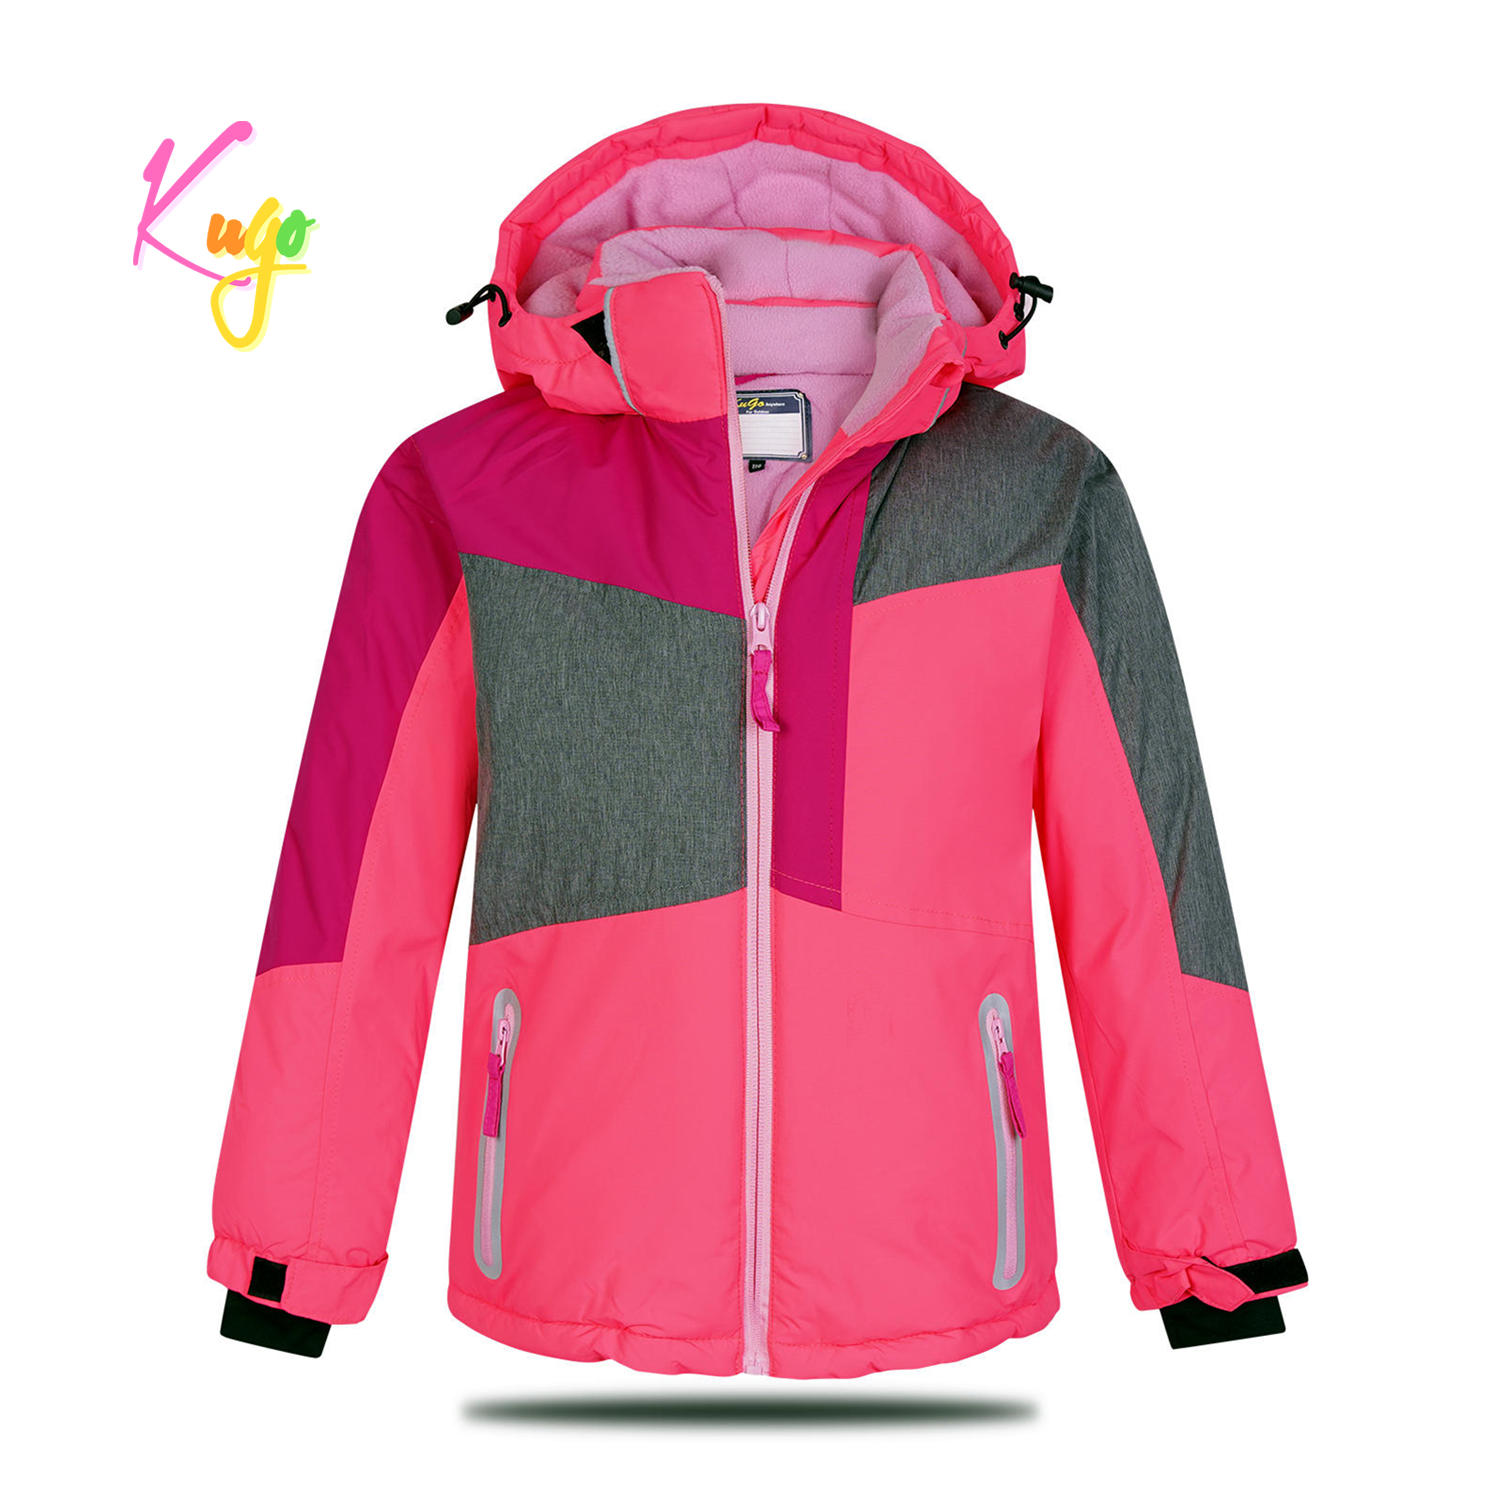 Dívčí zimní bunda - KUGO PB3888, růžová Barva: Růžová, Velikost: 104